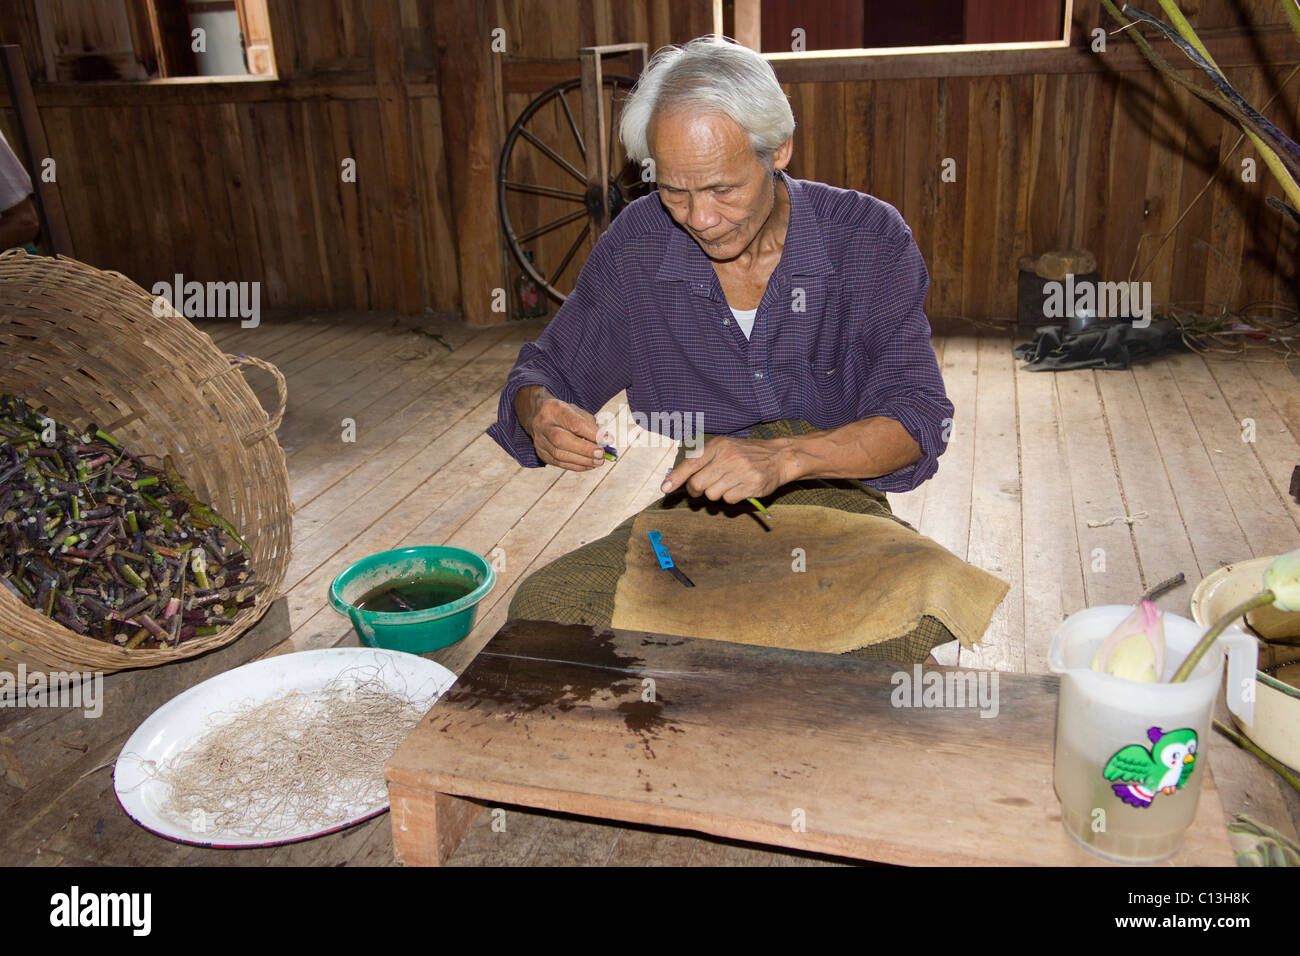 L'homme de l'extraction à partir de filaments textiles fleur de lotus, Paw Khone village, lac Inle, Birmanie Myanmar Banque D'Images